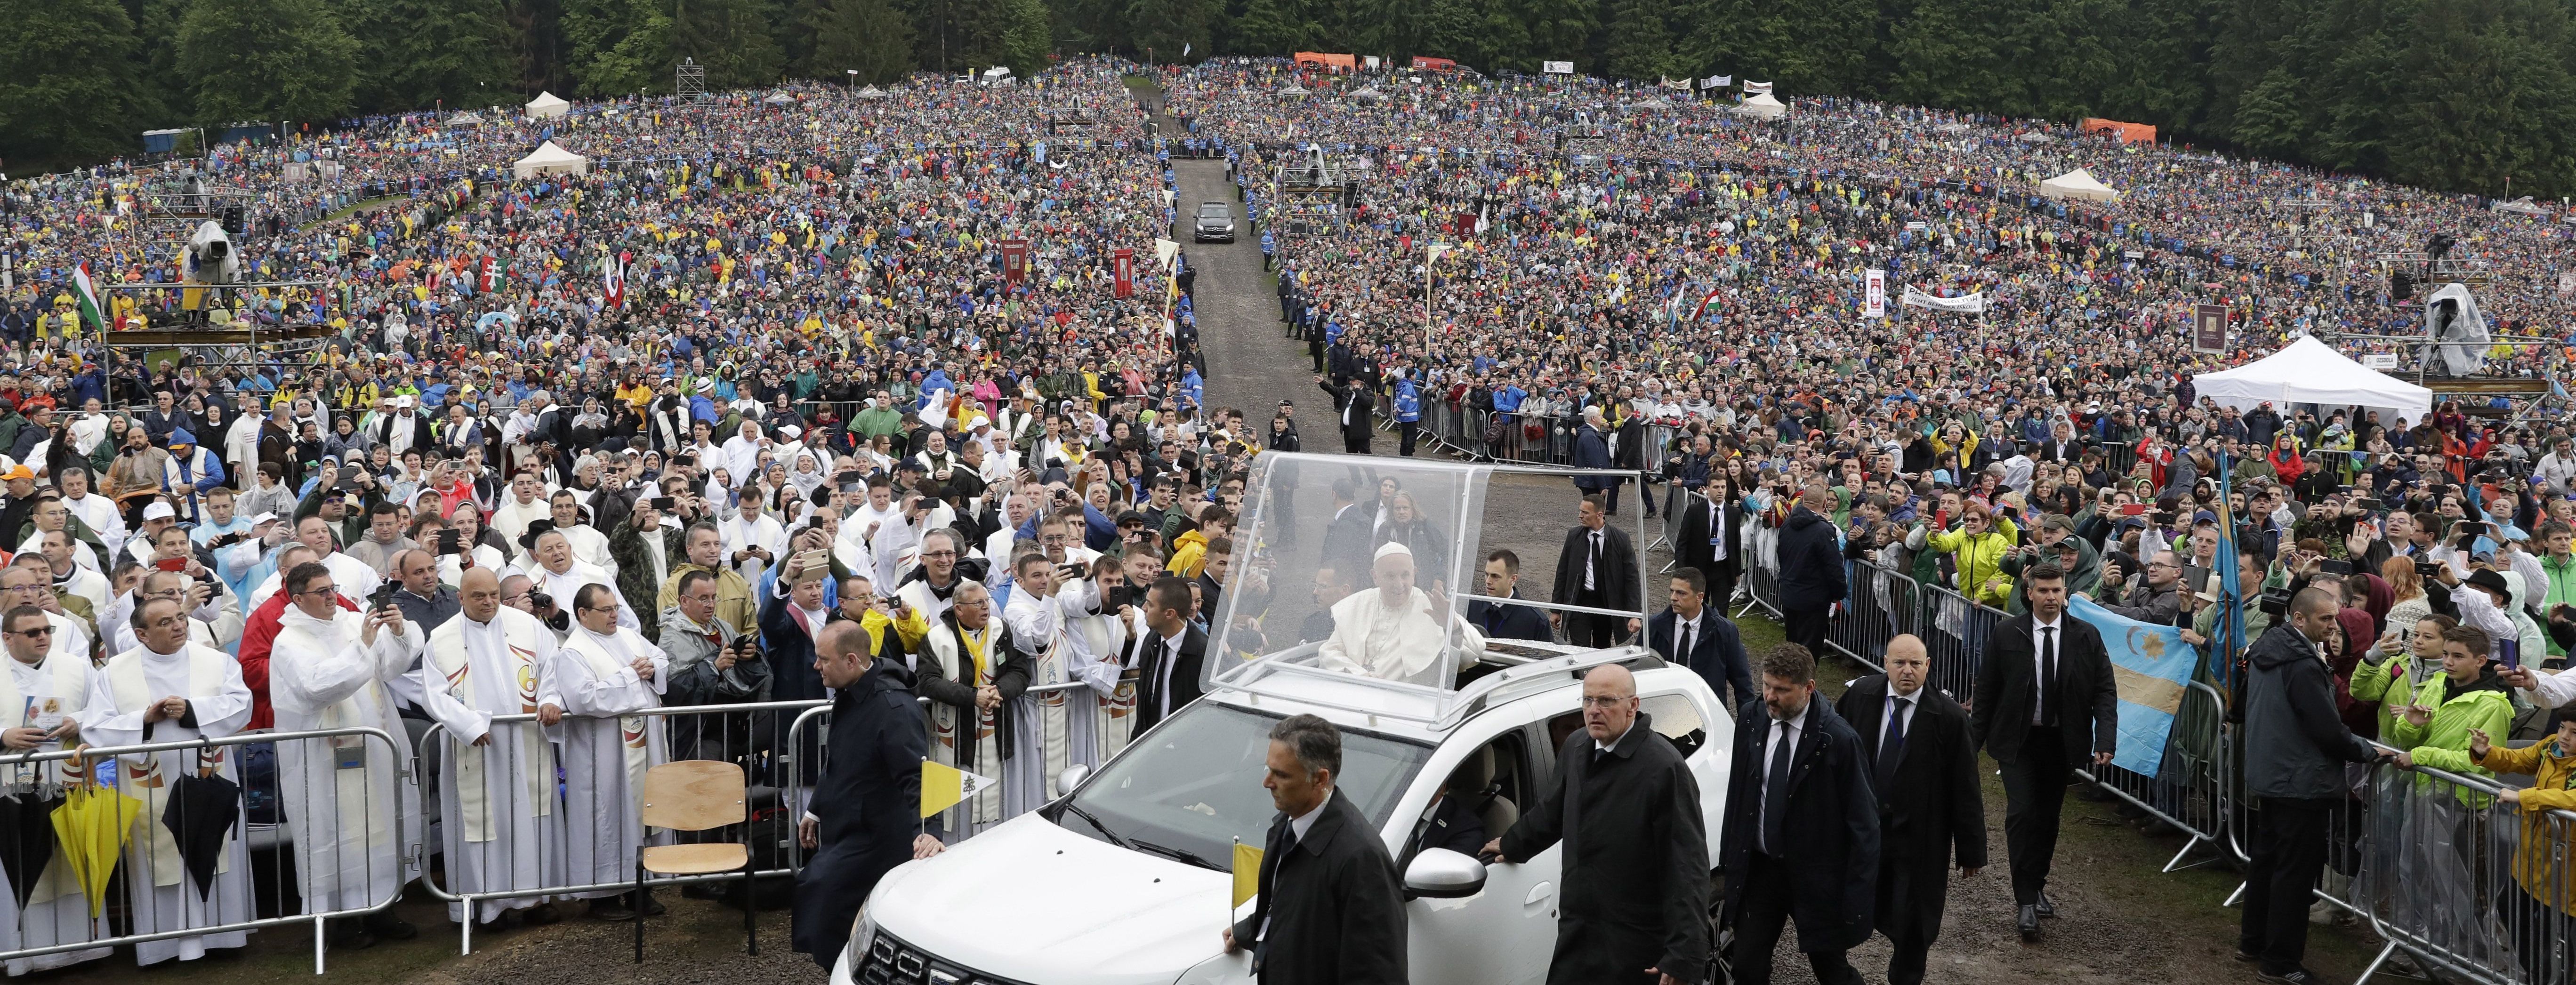 Папа Римский в сопровождении ливня совершает путешествие в румынские Карпаты